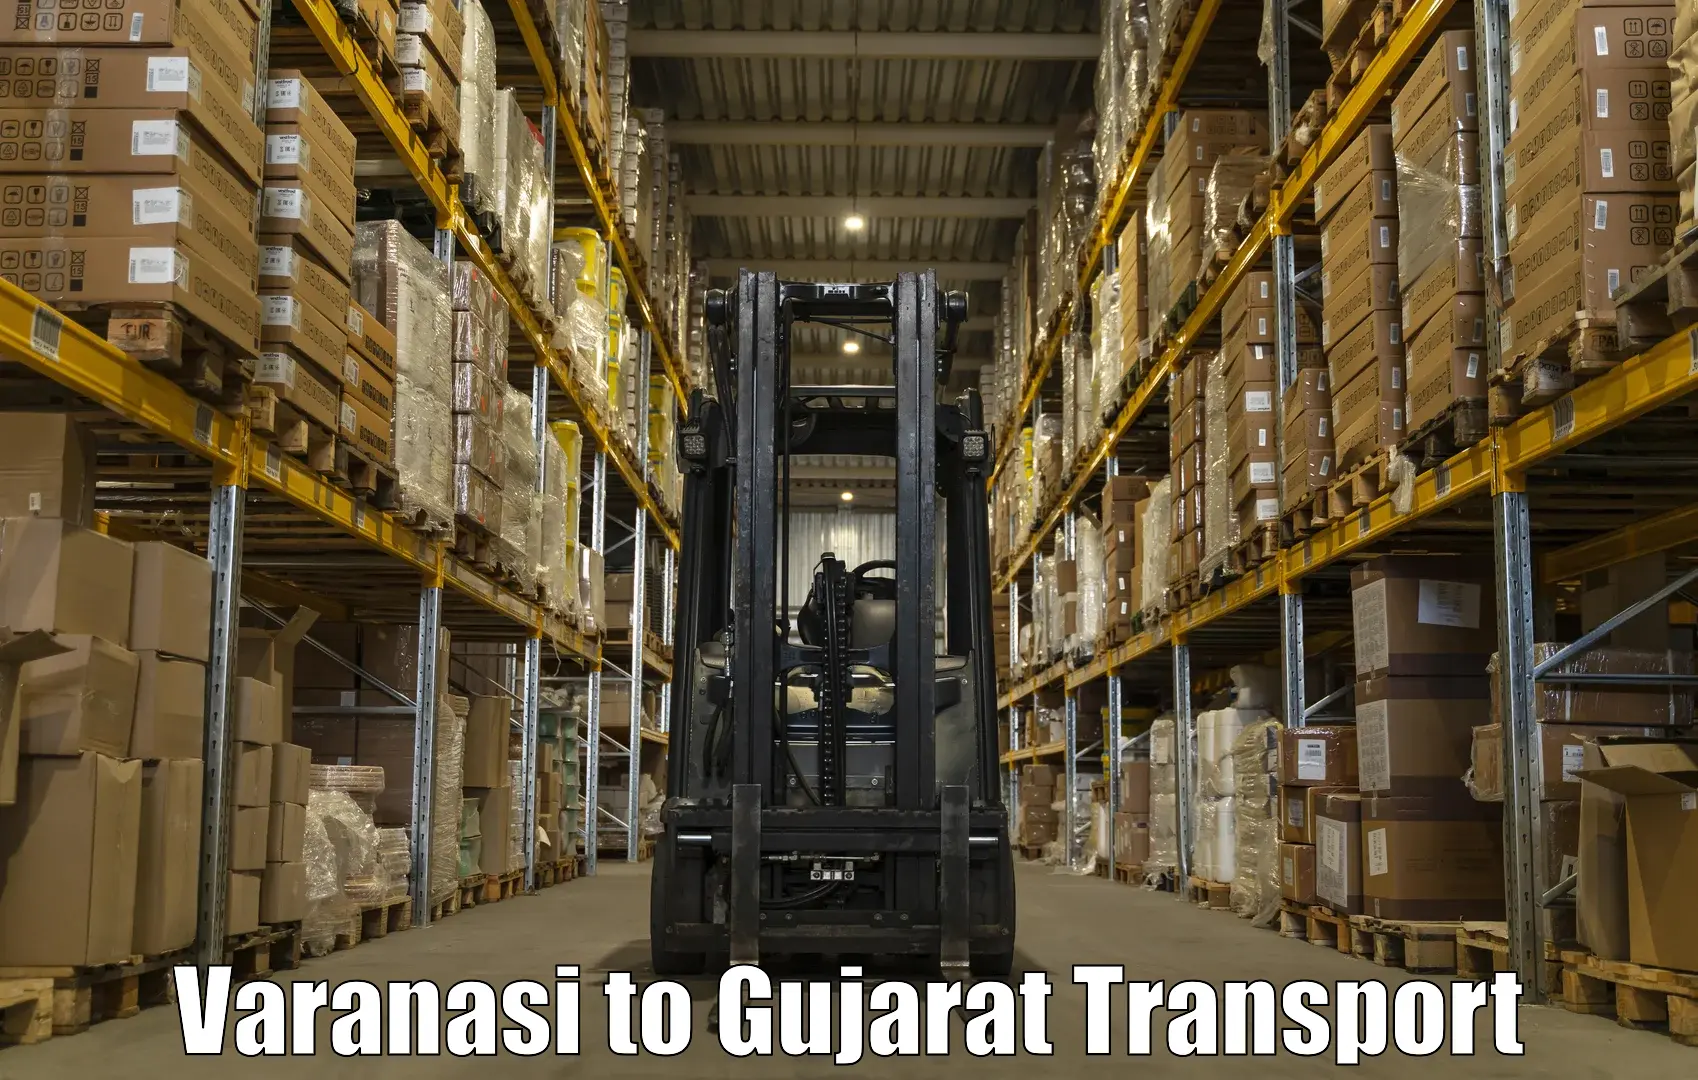 Transportation services Varanasi to Lunawada